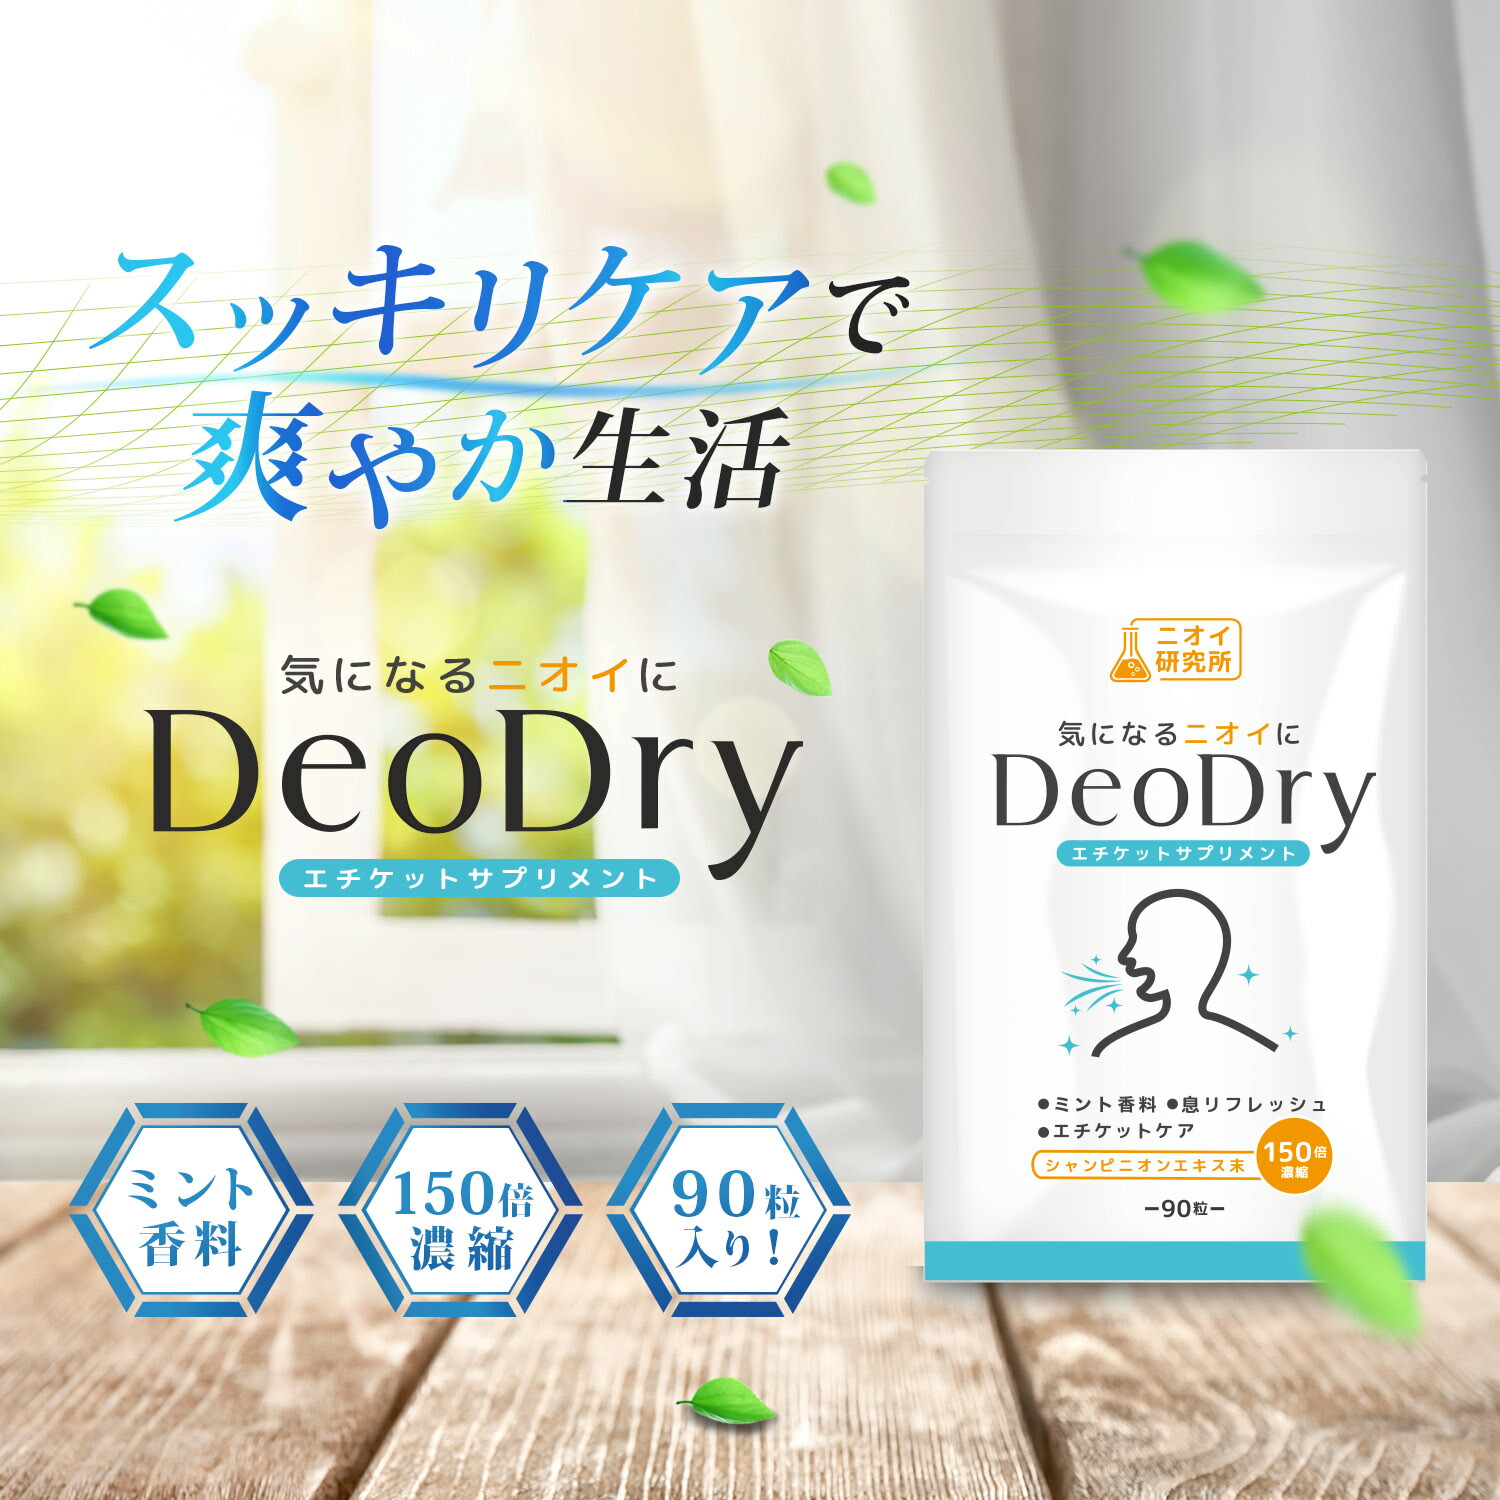 ニオイ研究所「DeoDry エチケットサプリメント」